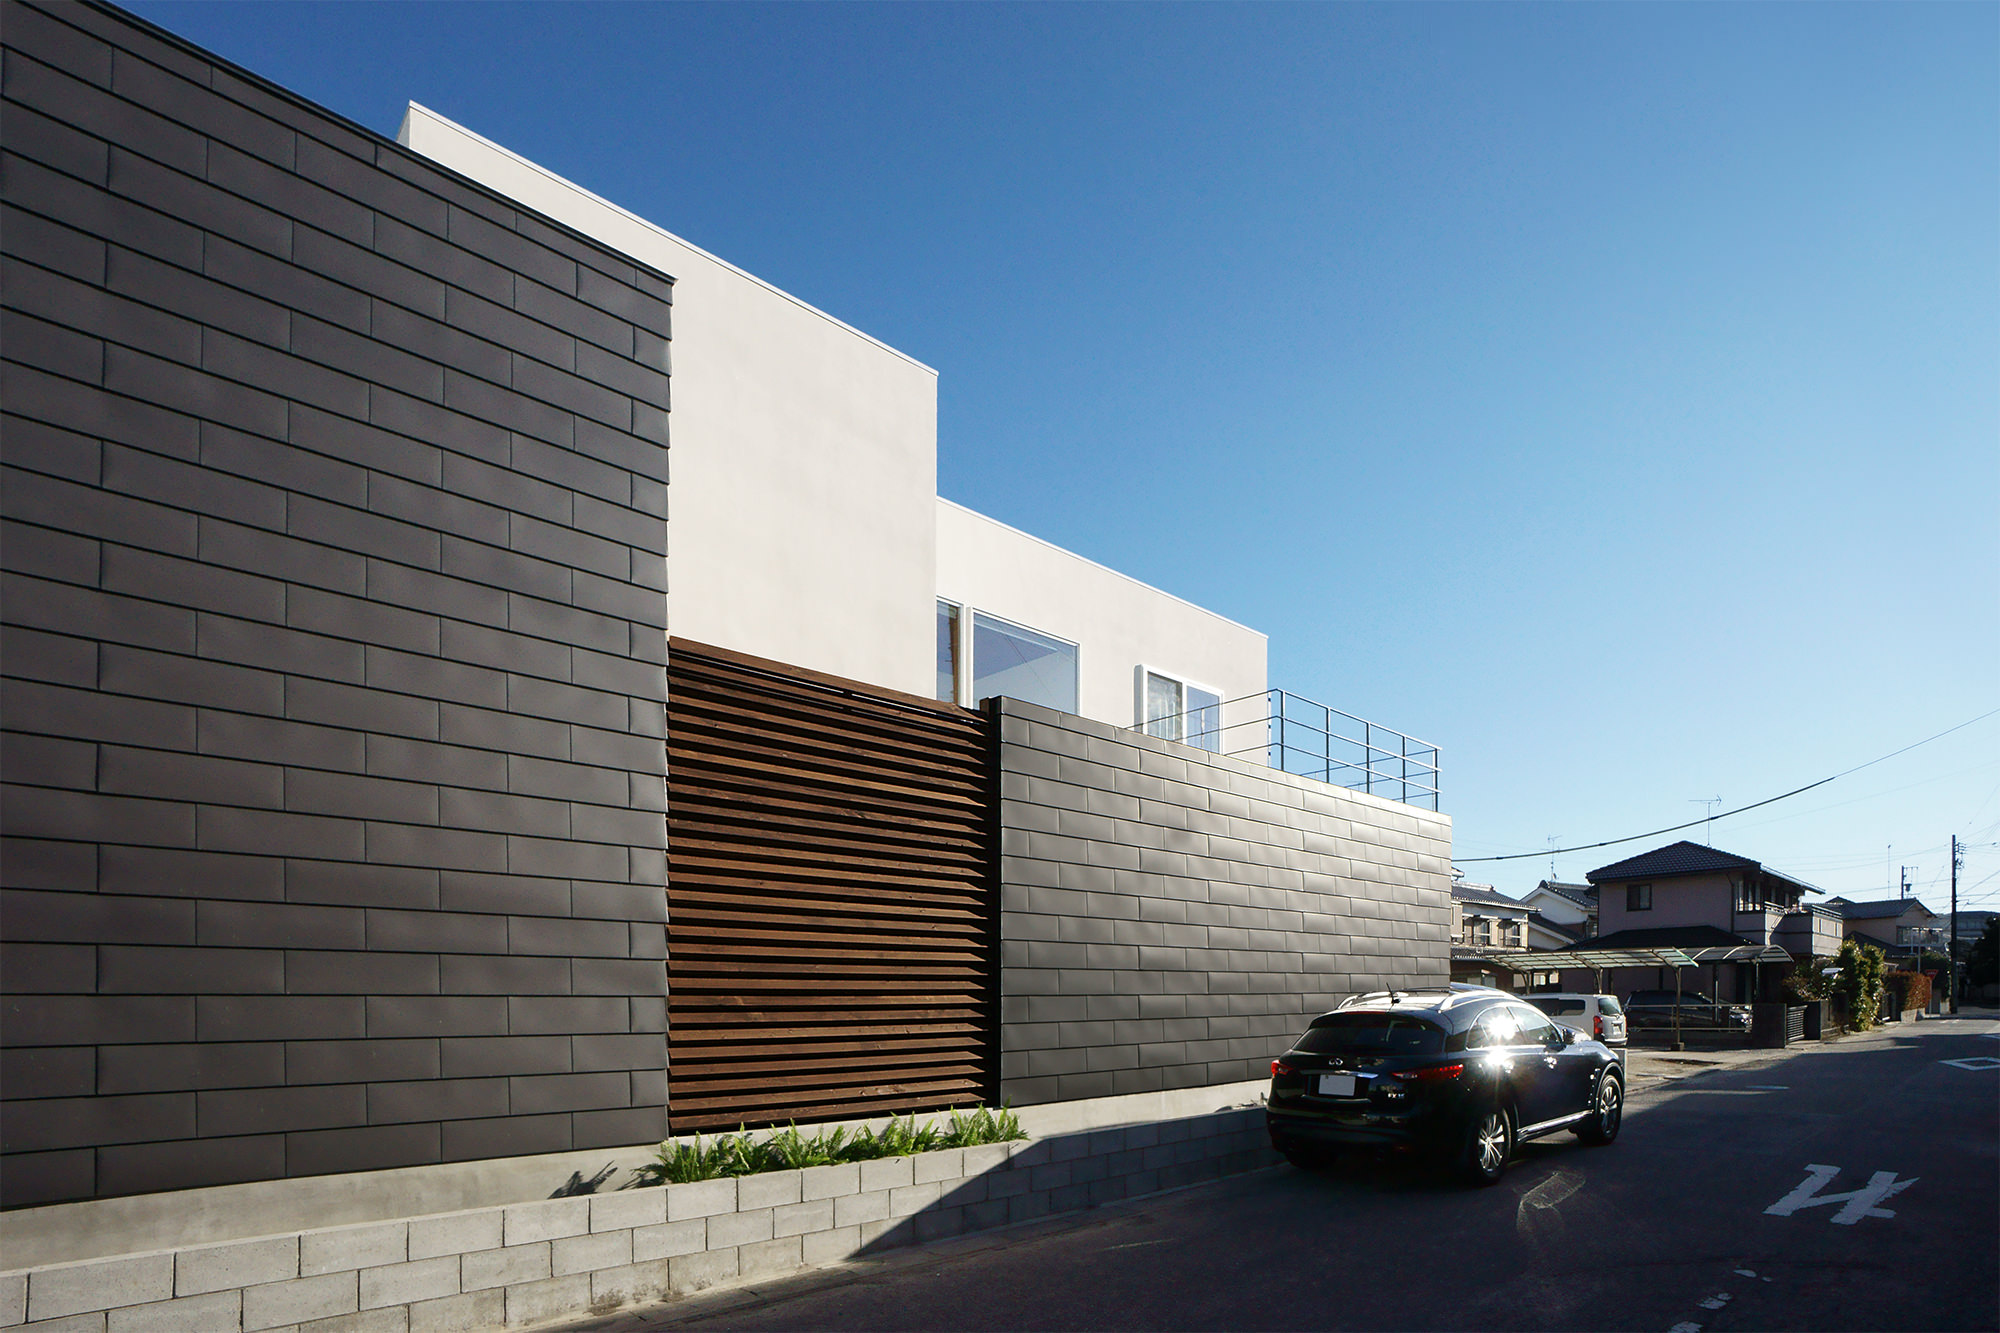 ガルバリウム鋼板一文字葺の外壁を使った住宅の外観写真